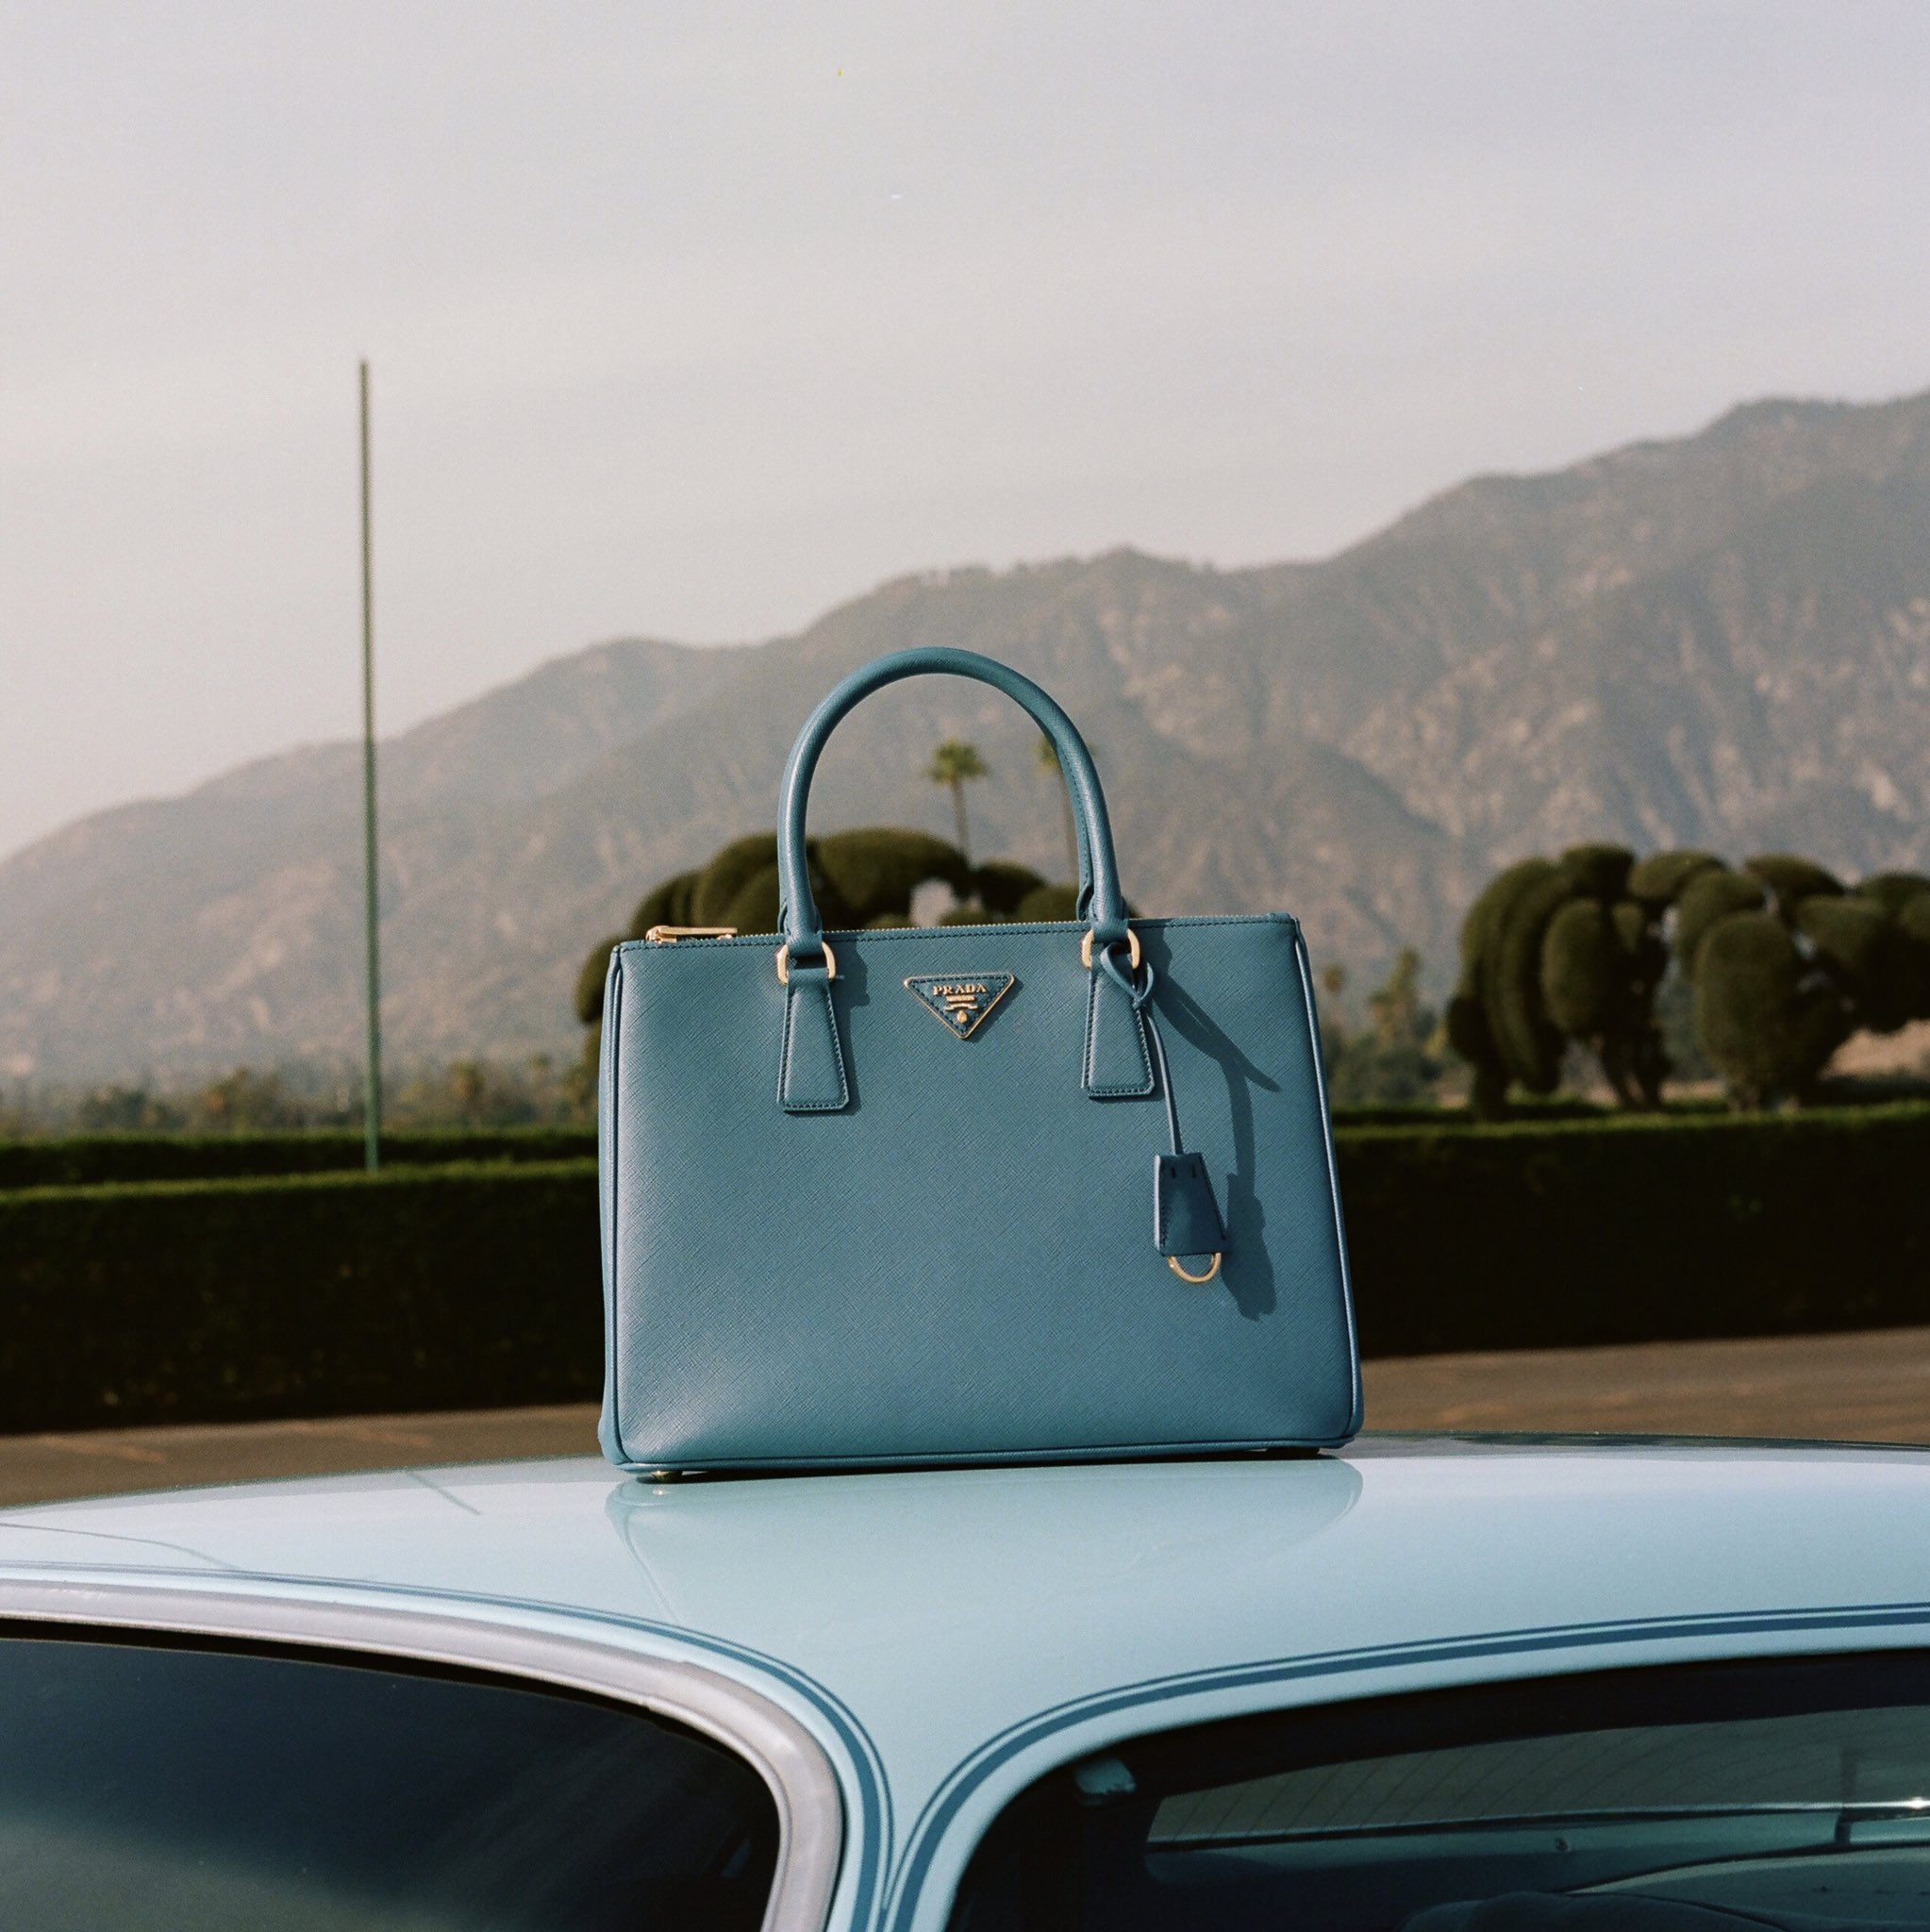 PRADA on X: The Prada Galleria Bag in cobalt blue. Discover more